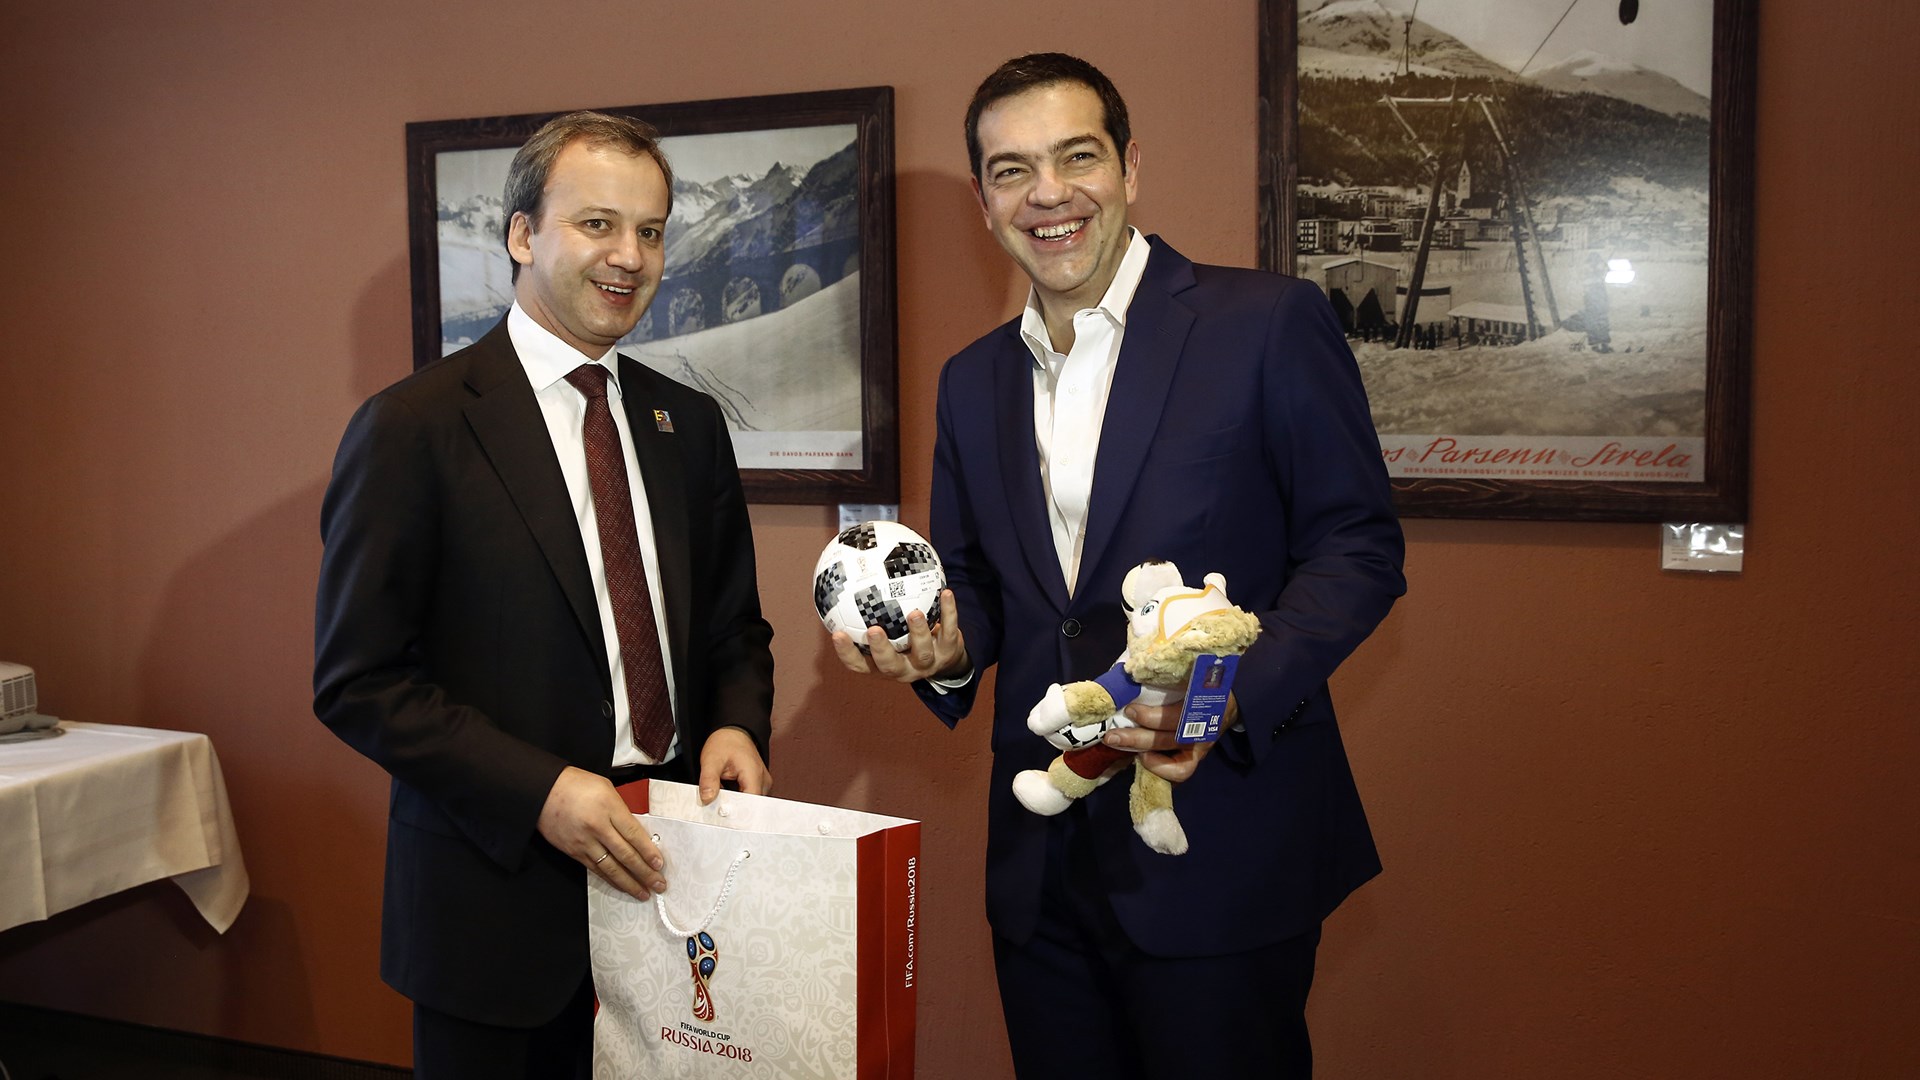 Τη μπάλα του Μουντιάλ έκανε δώρο στον Τσίπρα ο αναπληρωτής πρωθυπουργός της Ρωσίας – ΦΩΤΟ